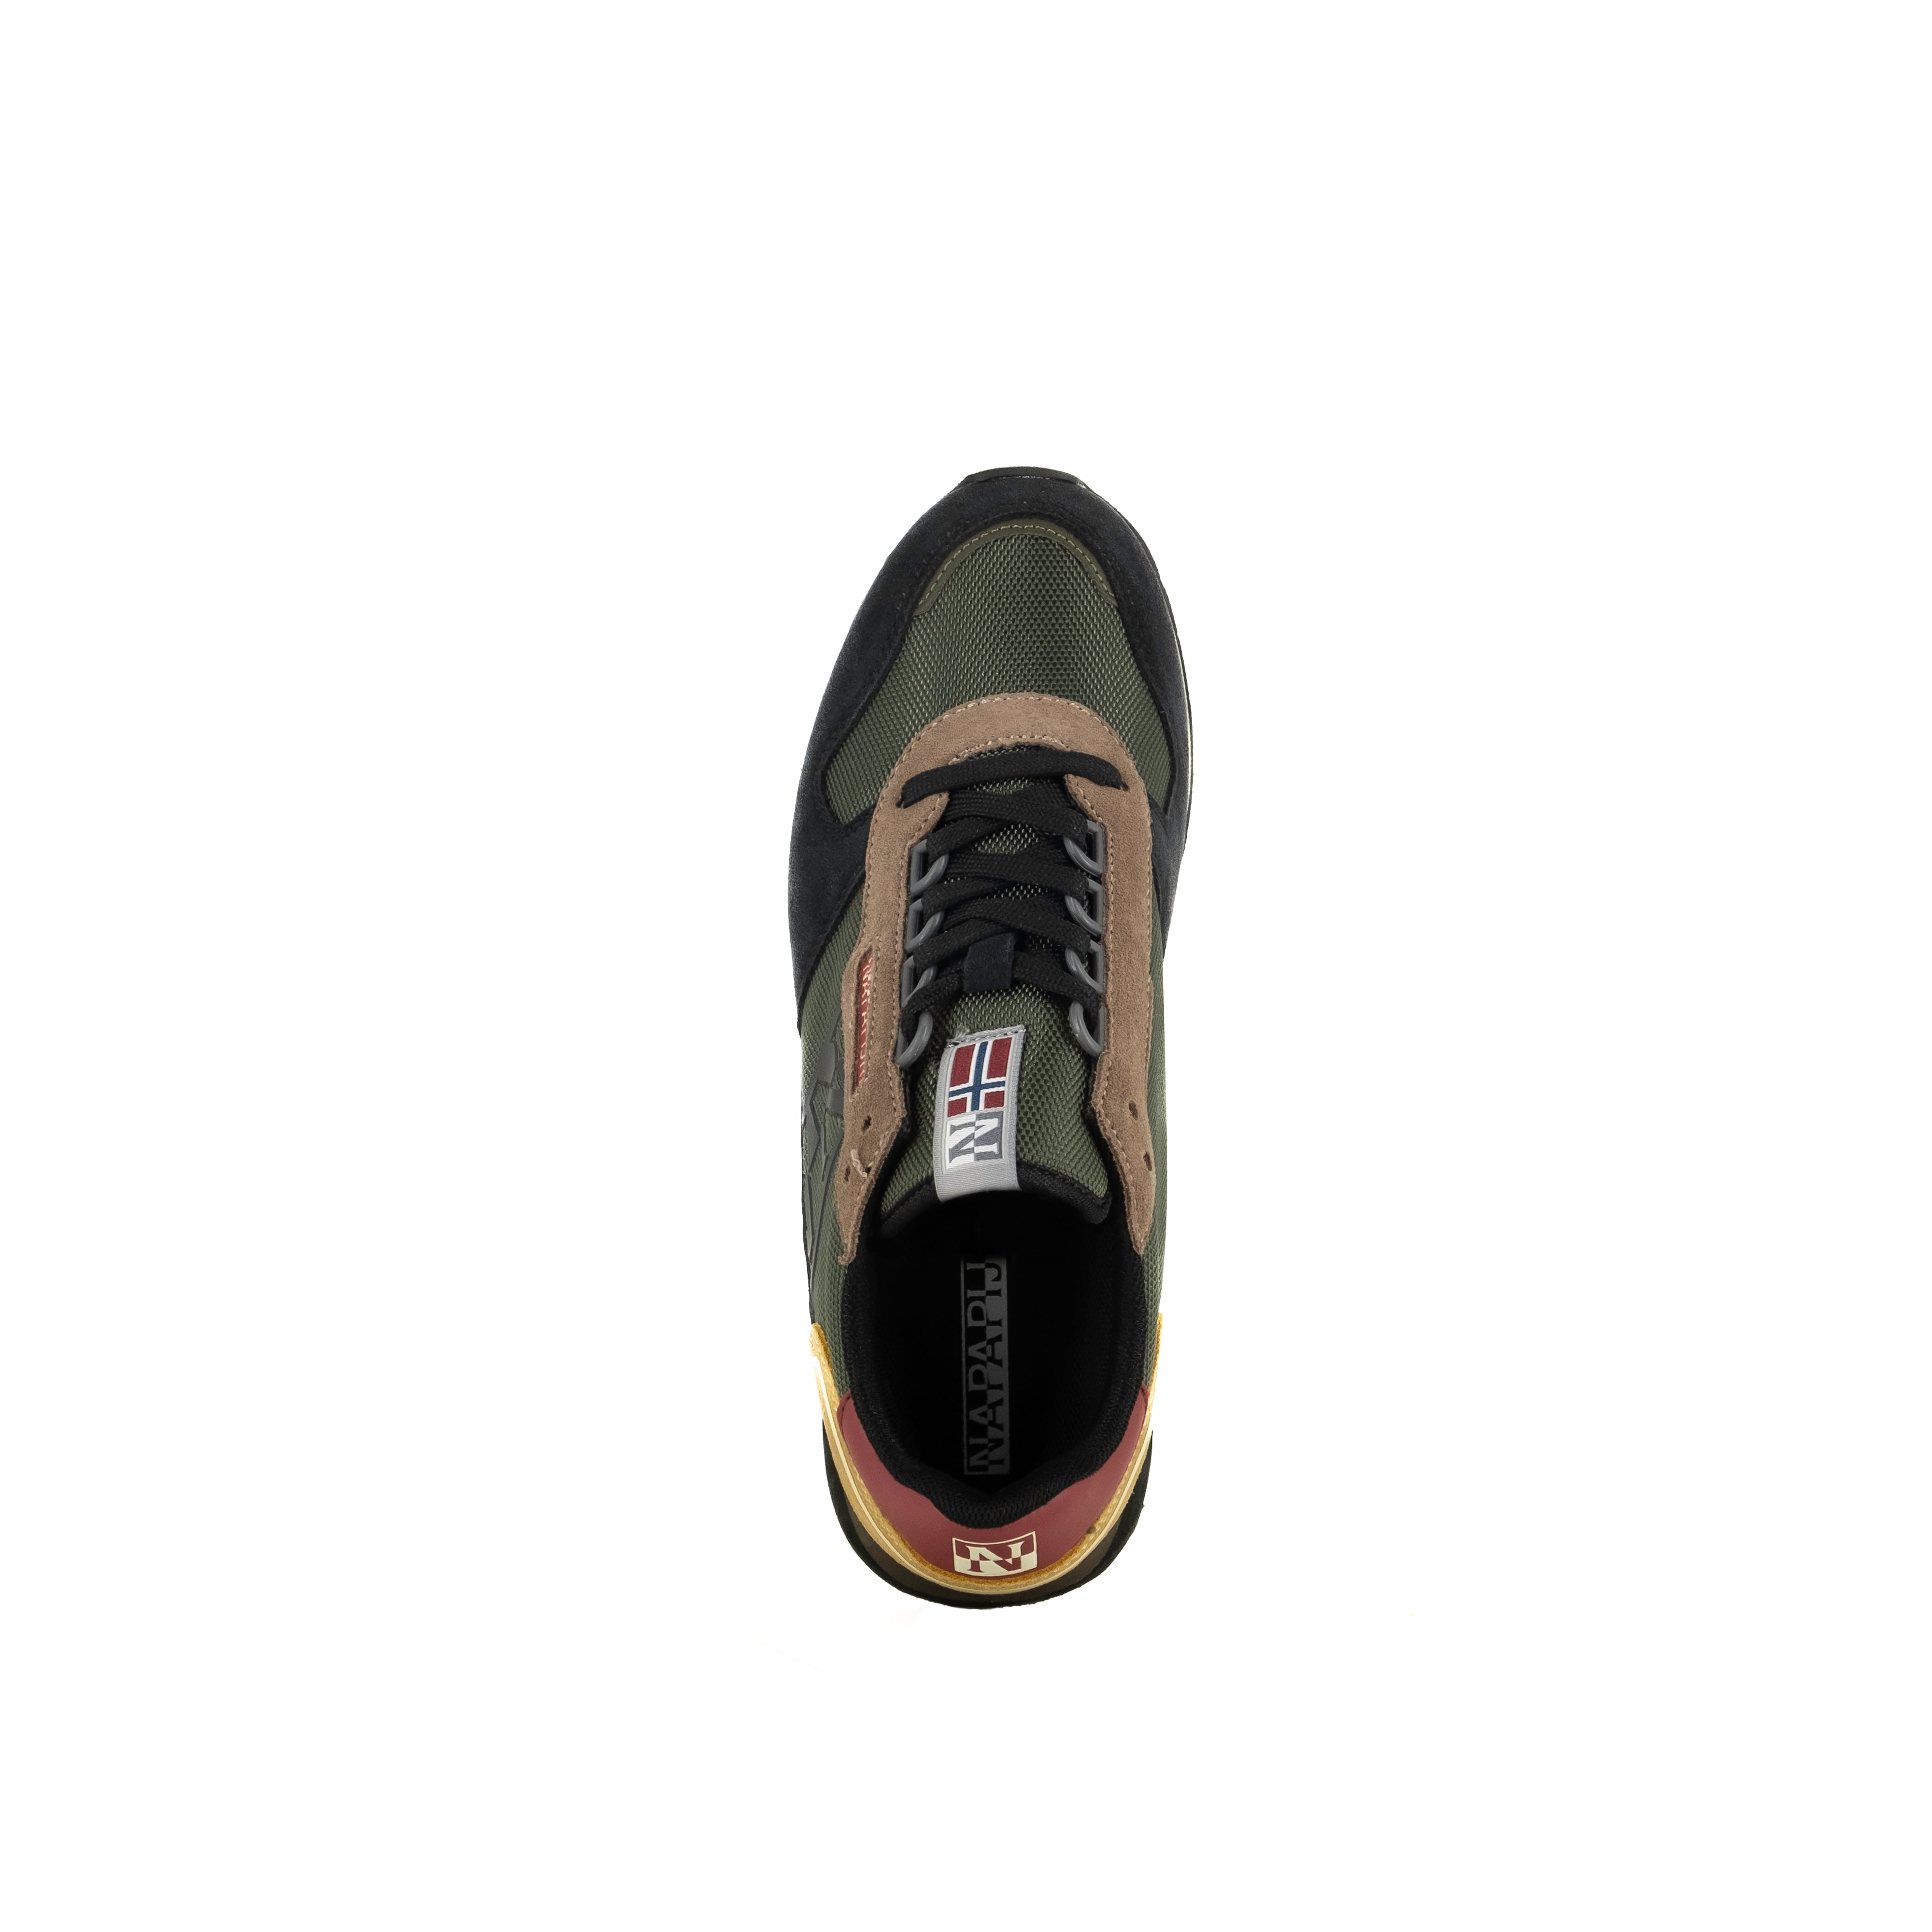 Napapijri Men's Running Sneakers in Olive Black Nylon